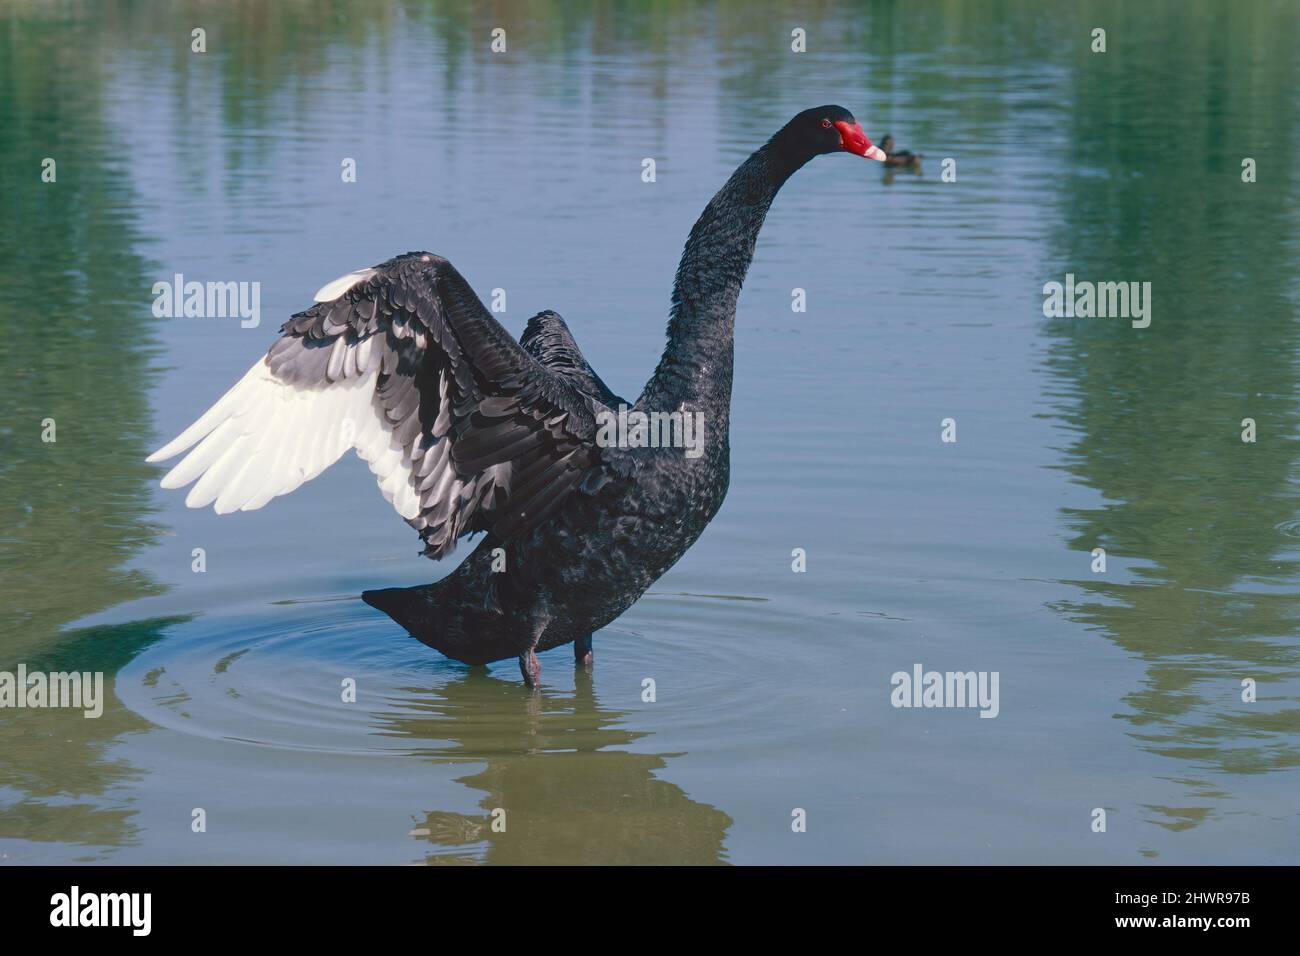 black swan at open wings in a lake, Cygnus atratus, Anatidae Stock Photo